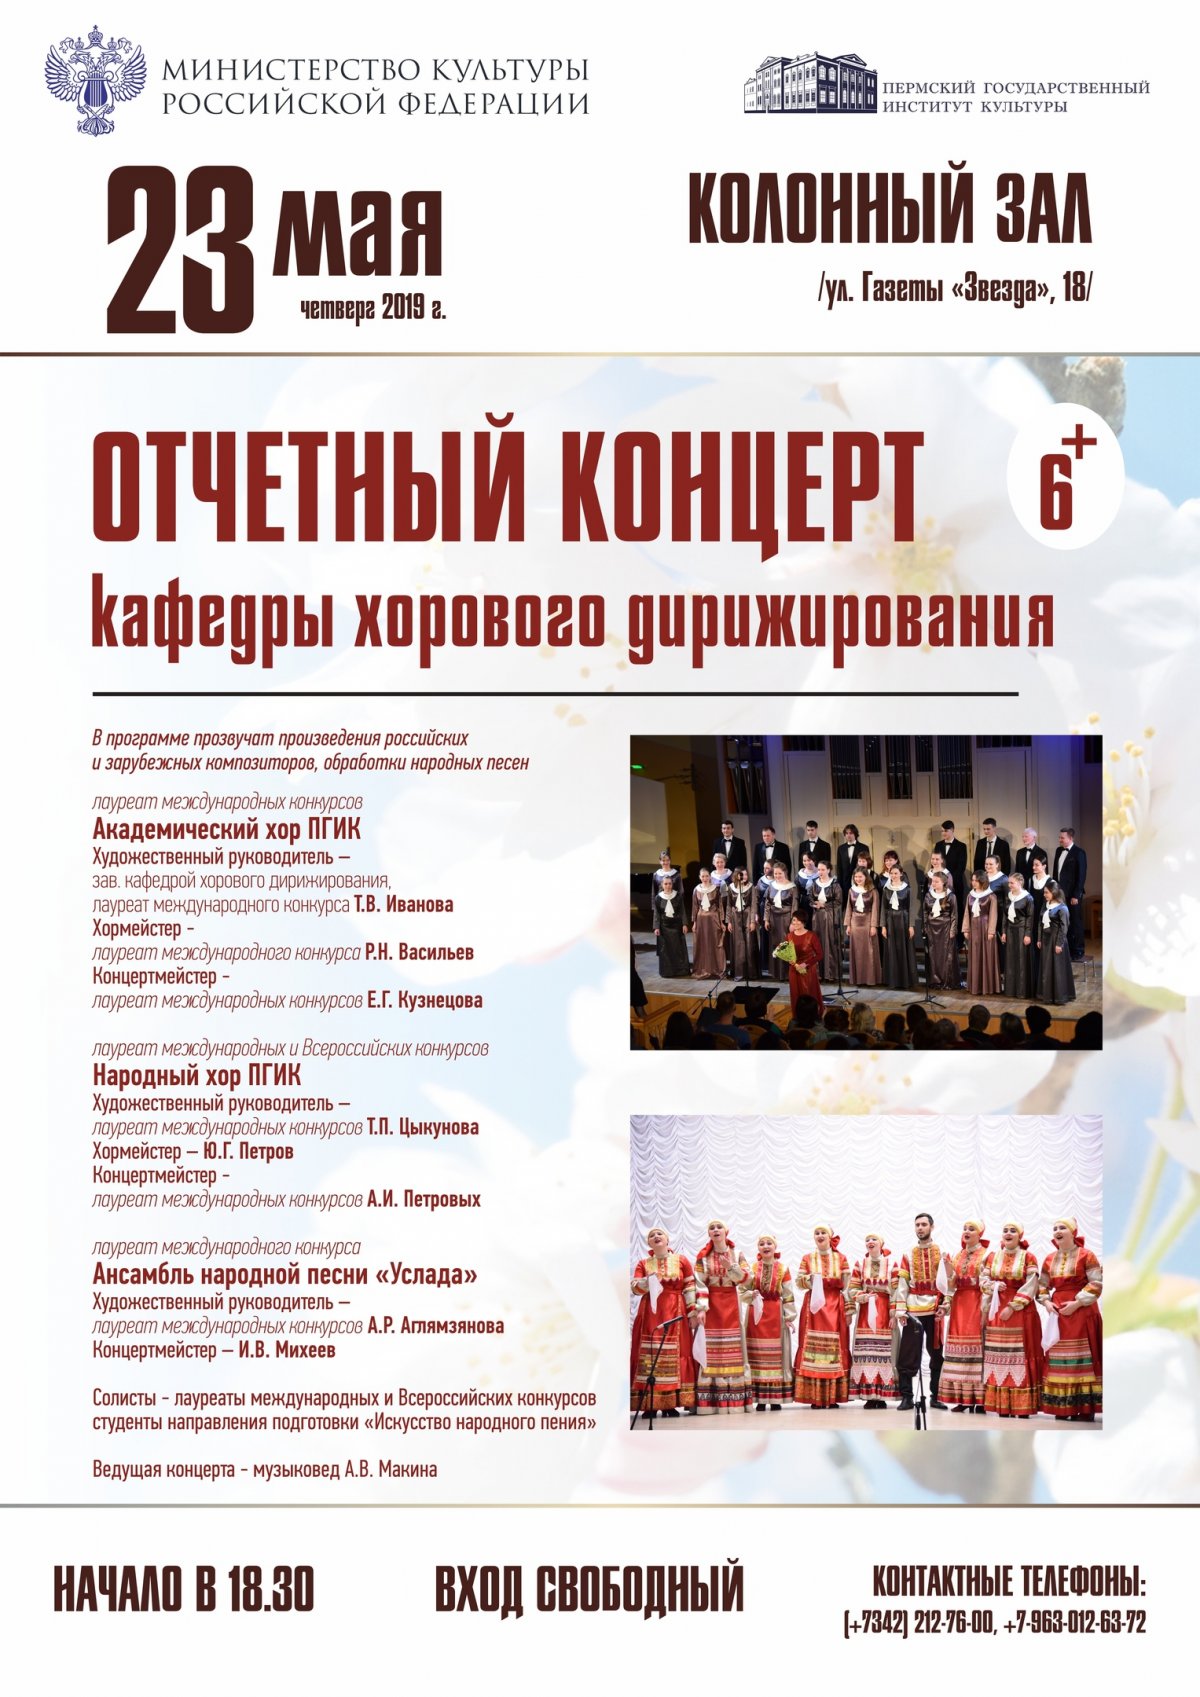 Консерватория Пермского государственного института культуры приглашает на отчетный концерт студентов кафедры хорового дирижирования.